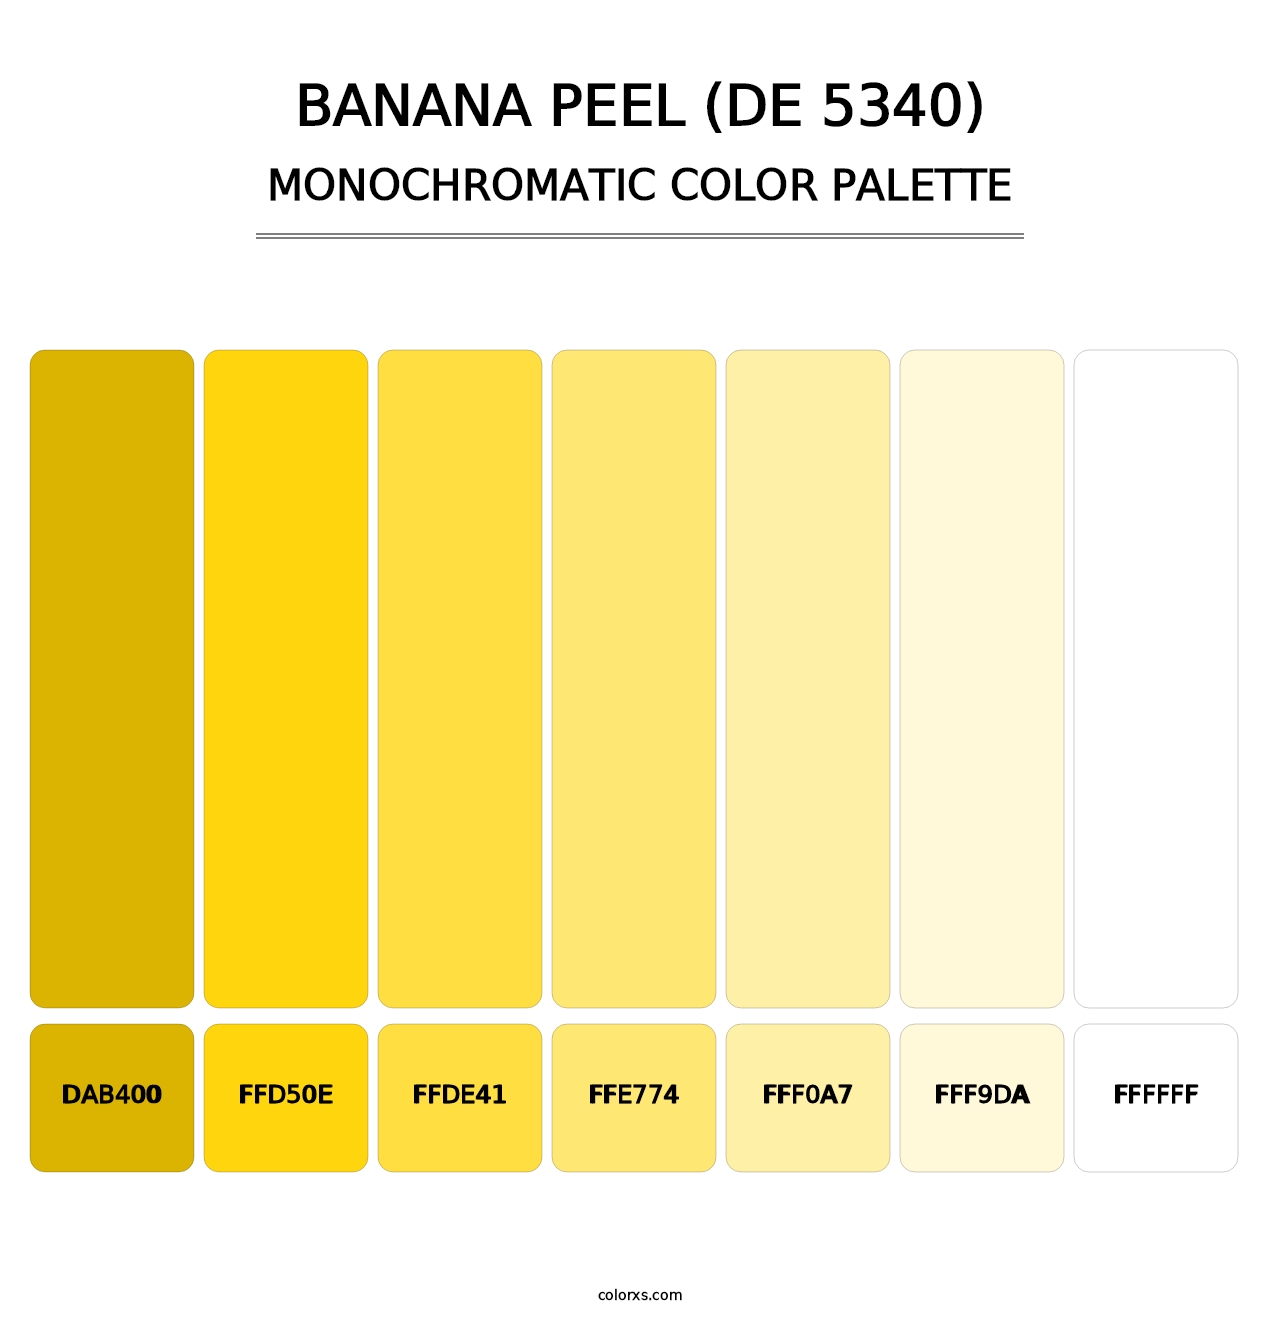 Banana Peel (DE 5340) - Monochromatic Color Palette